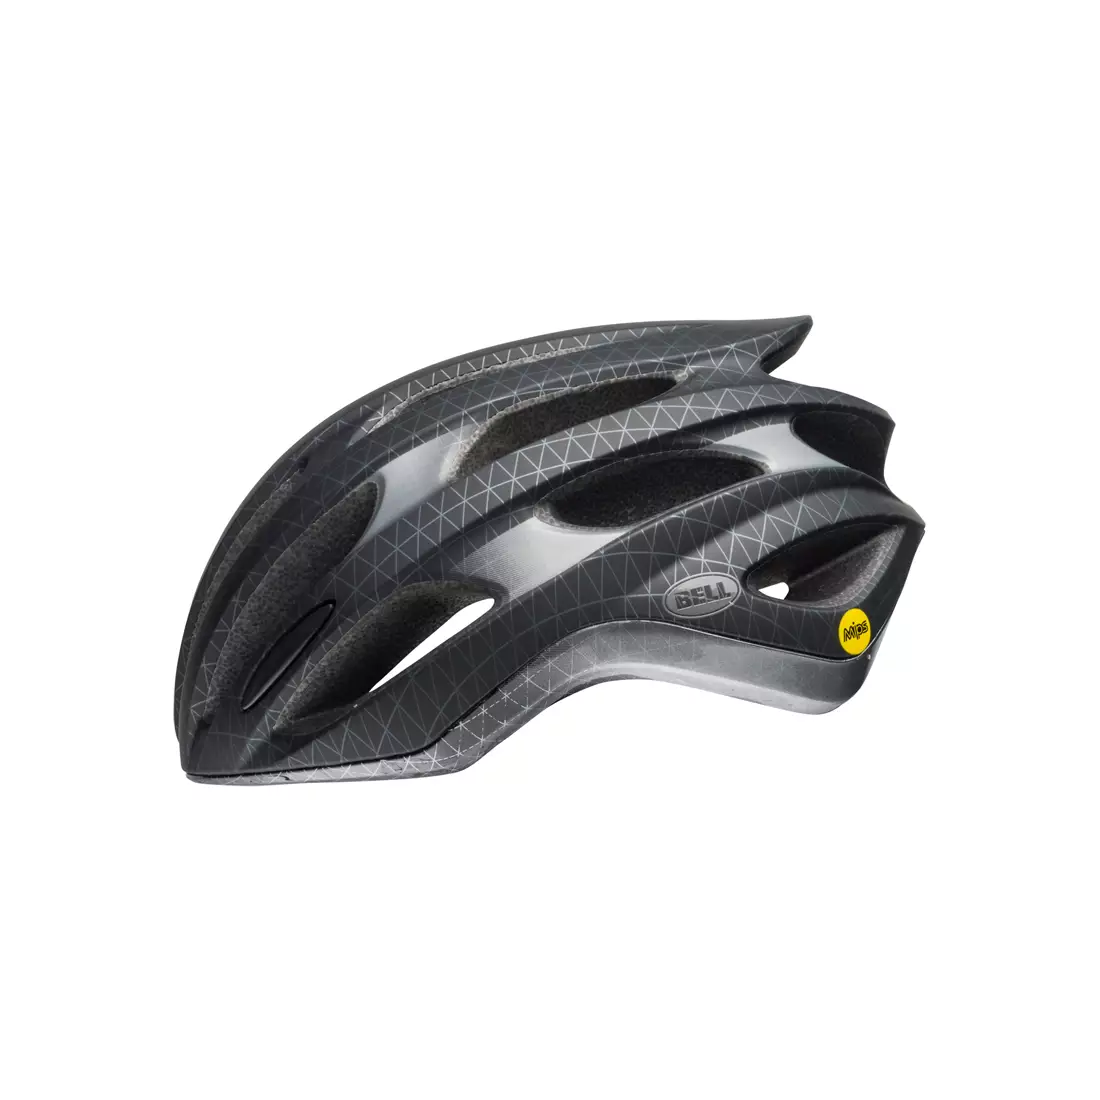 BELL FORMULA MIPS BEL-7088527 matte black gunmetal bicycle helmet